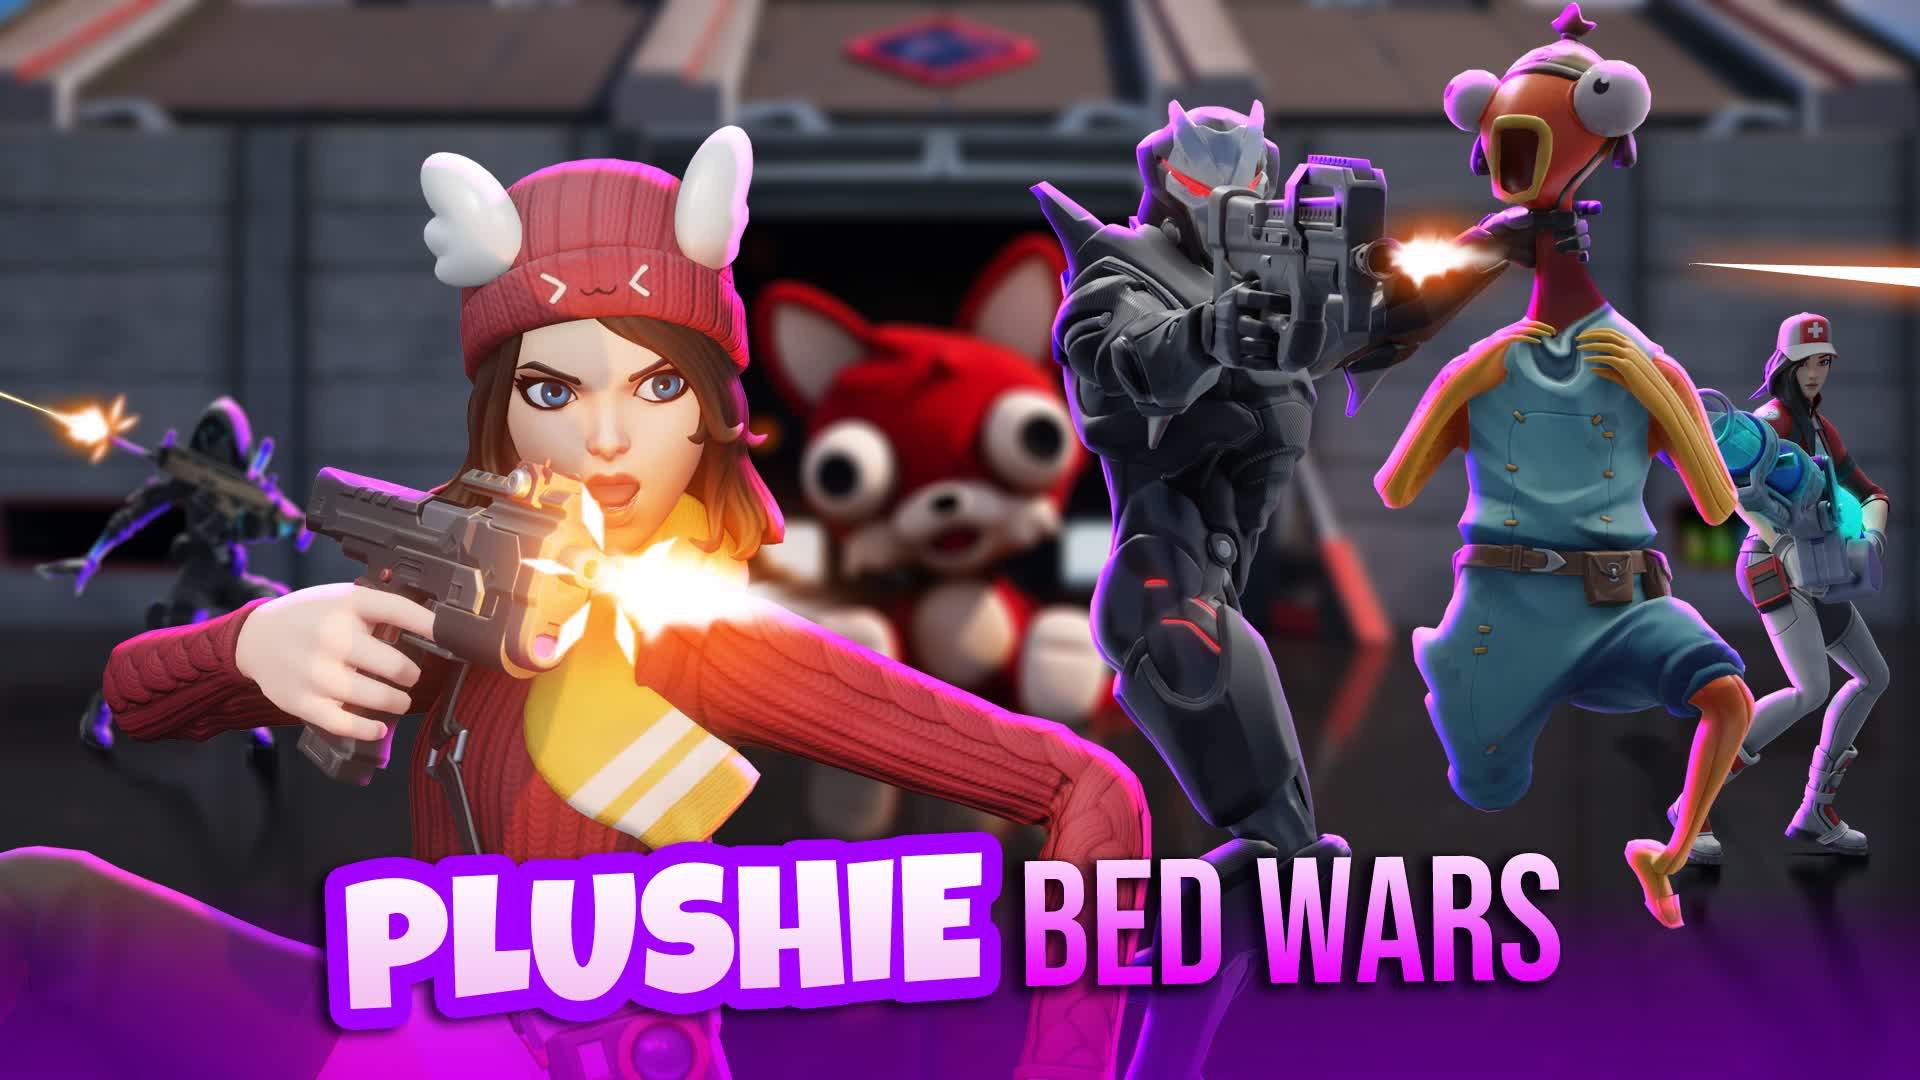 Plushie Bed Wars